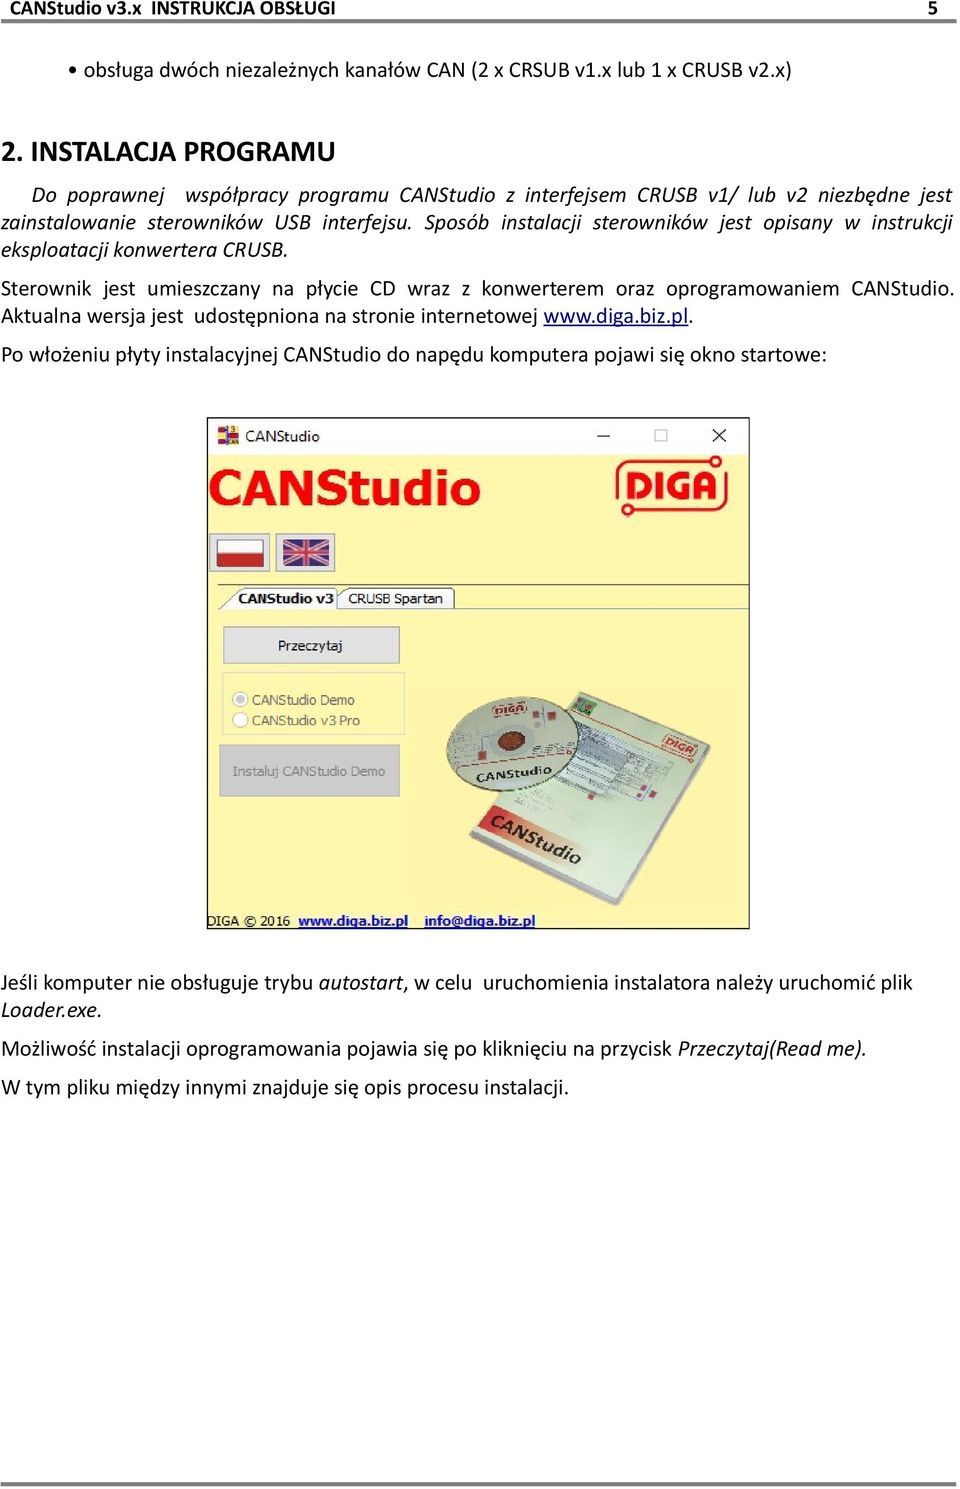 Sposób instalacji sterowników jest opisany w instrukcji eksploatacji konwertera CRUSB. Sterownik jest umieszczany na płycie CD wraz z konwerterem oraz oprogramowaniem CANStudio.